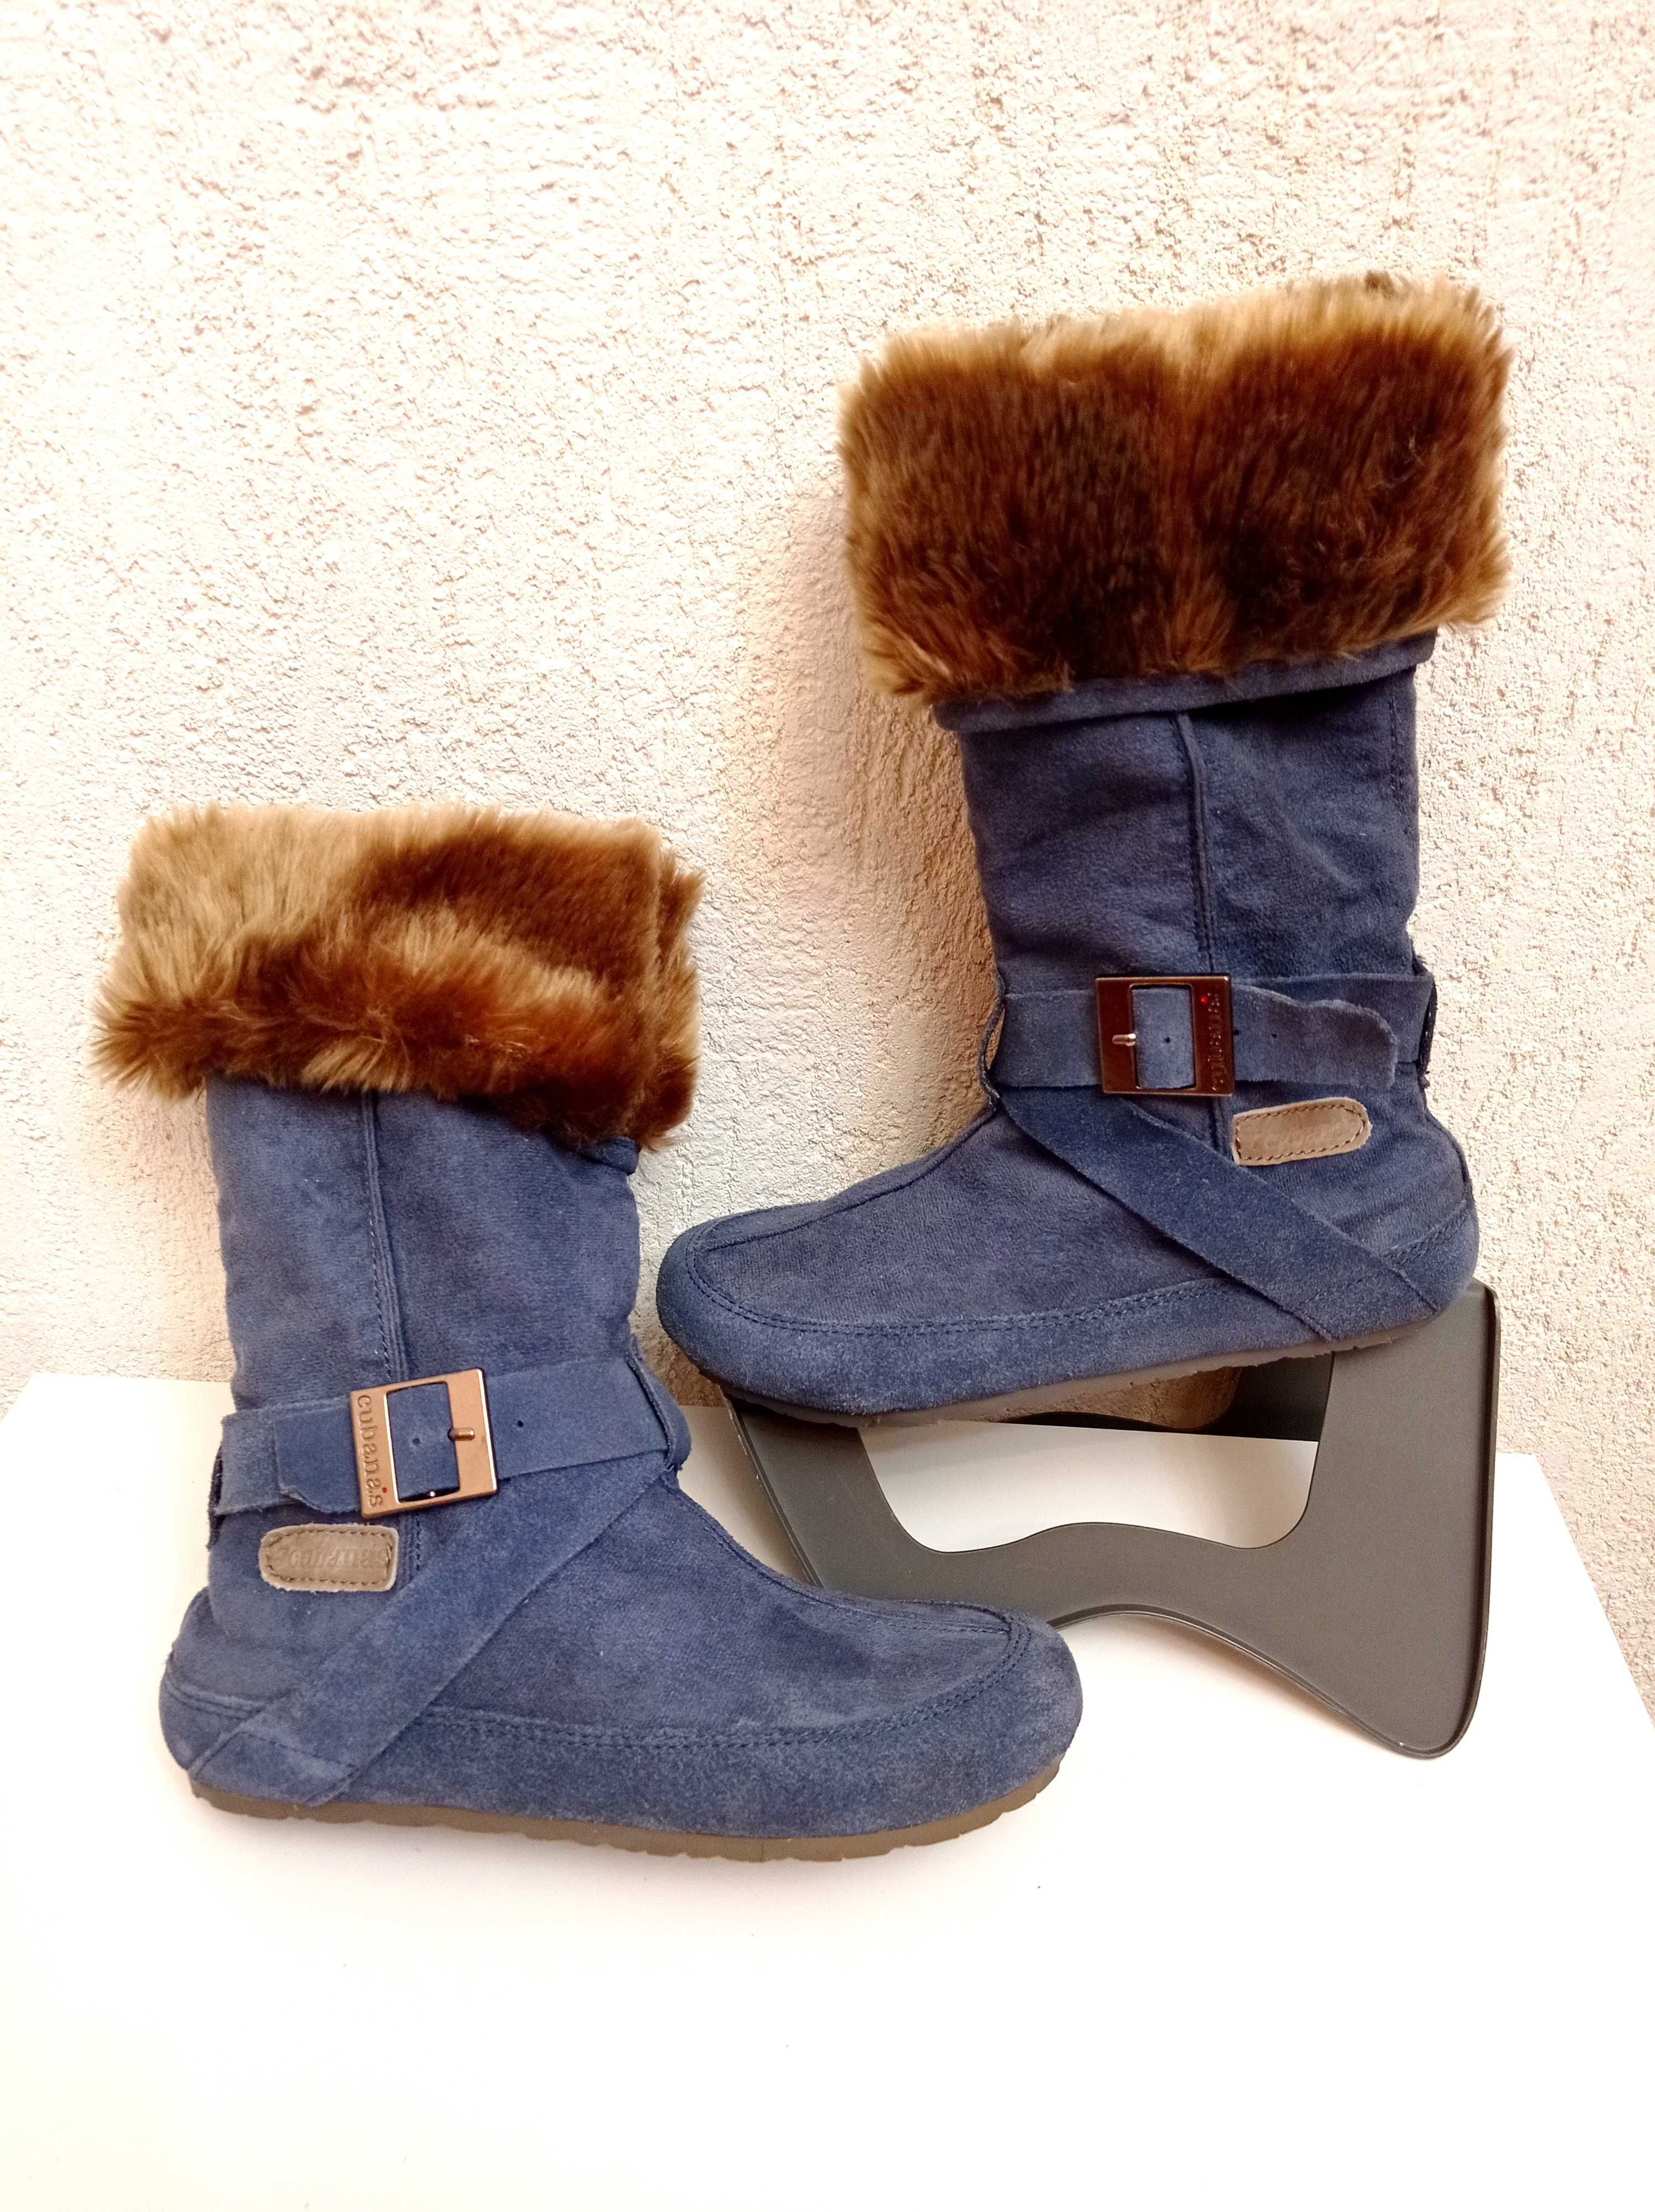 CUBANAS buty zimowe 37 damskie NOWE Kozaki botki Śniegowce Skóra ocpl